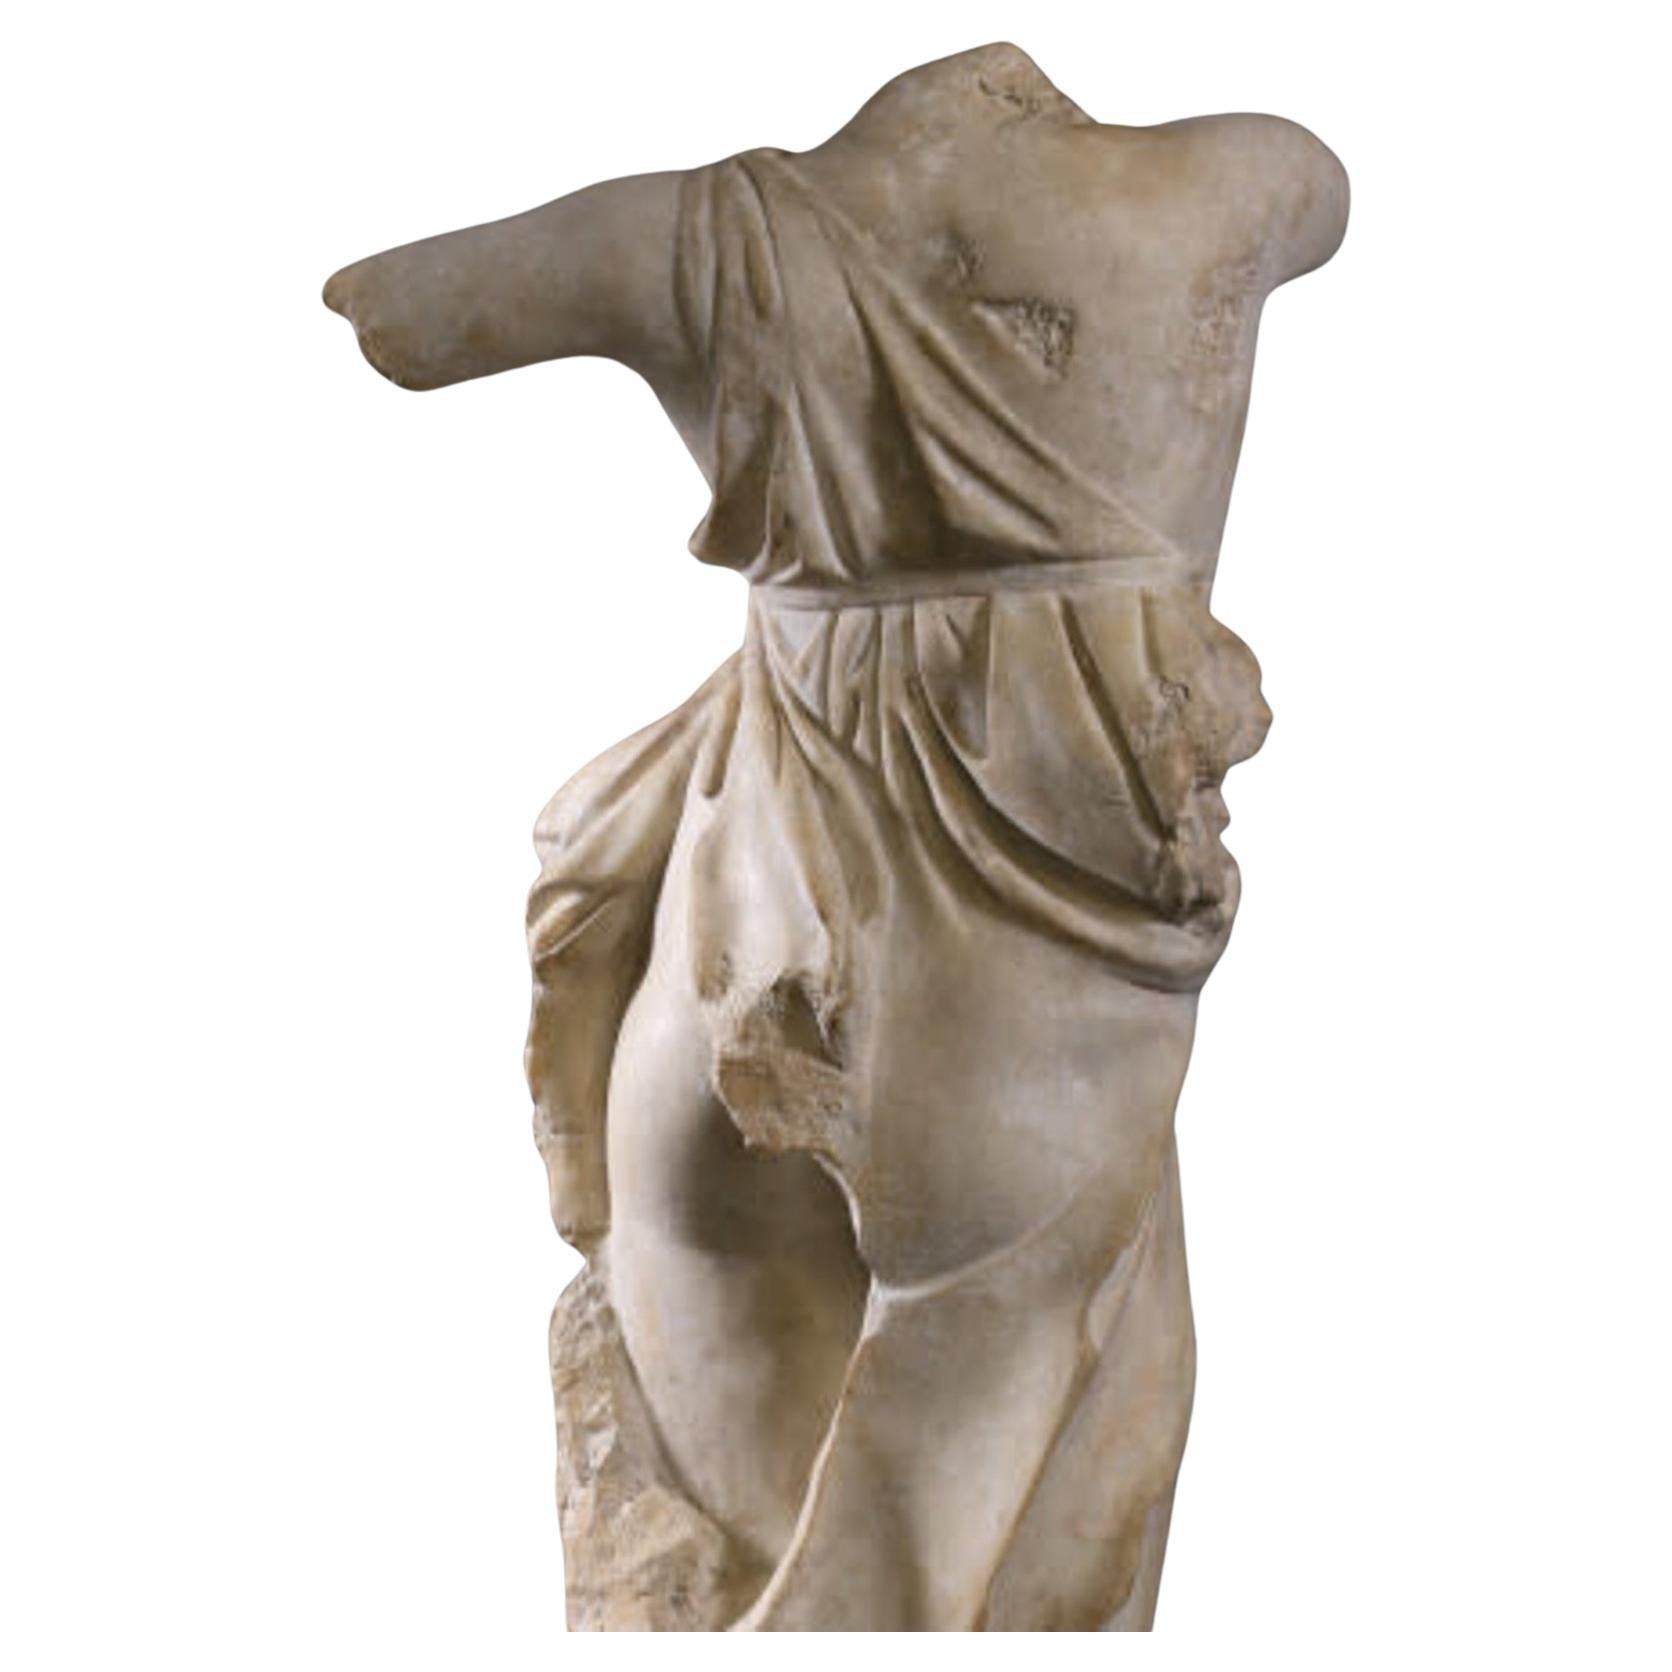 Die Büste der Tänzerin von Tivoli ist ein Fragment einer Originalstatue, die wahrscheinlich aus dem 4. Jahrhundert v. Chr. stammt und im Archäologischen Museum von Rom aufbewahrt wird.
Diese prächtige, große, dekorative Skulptur ist fein gearbeitet